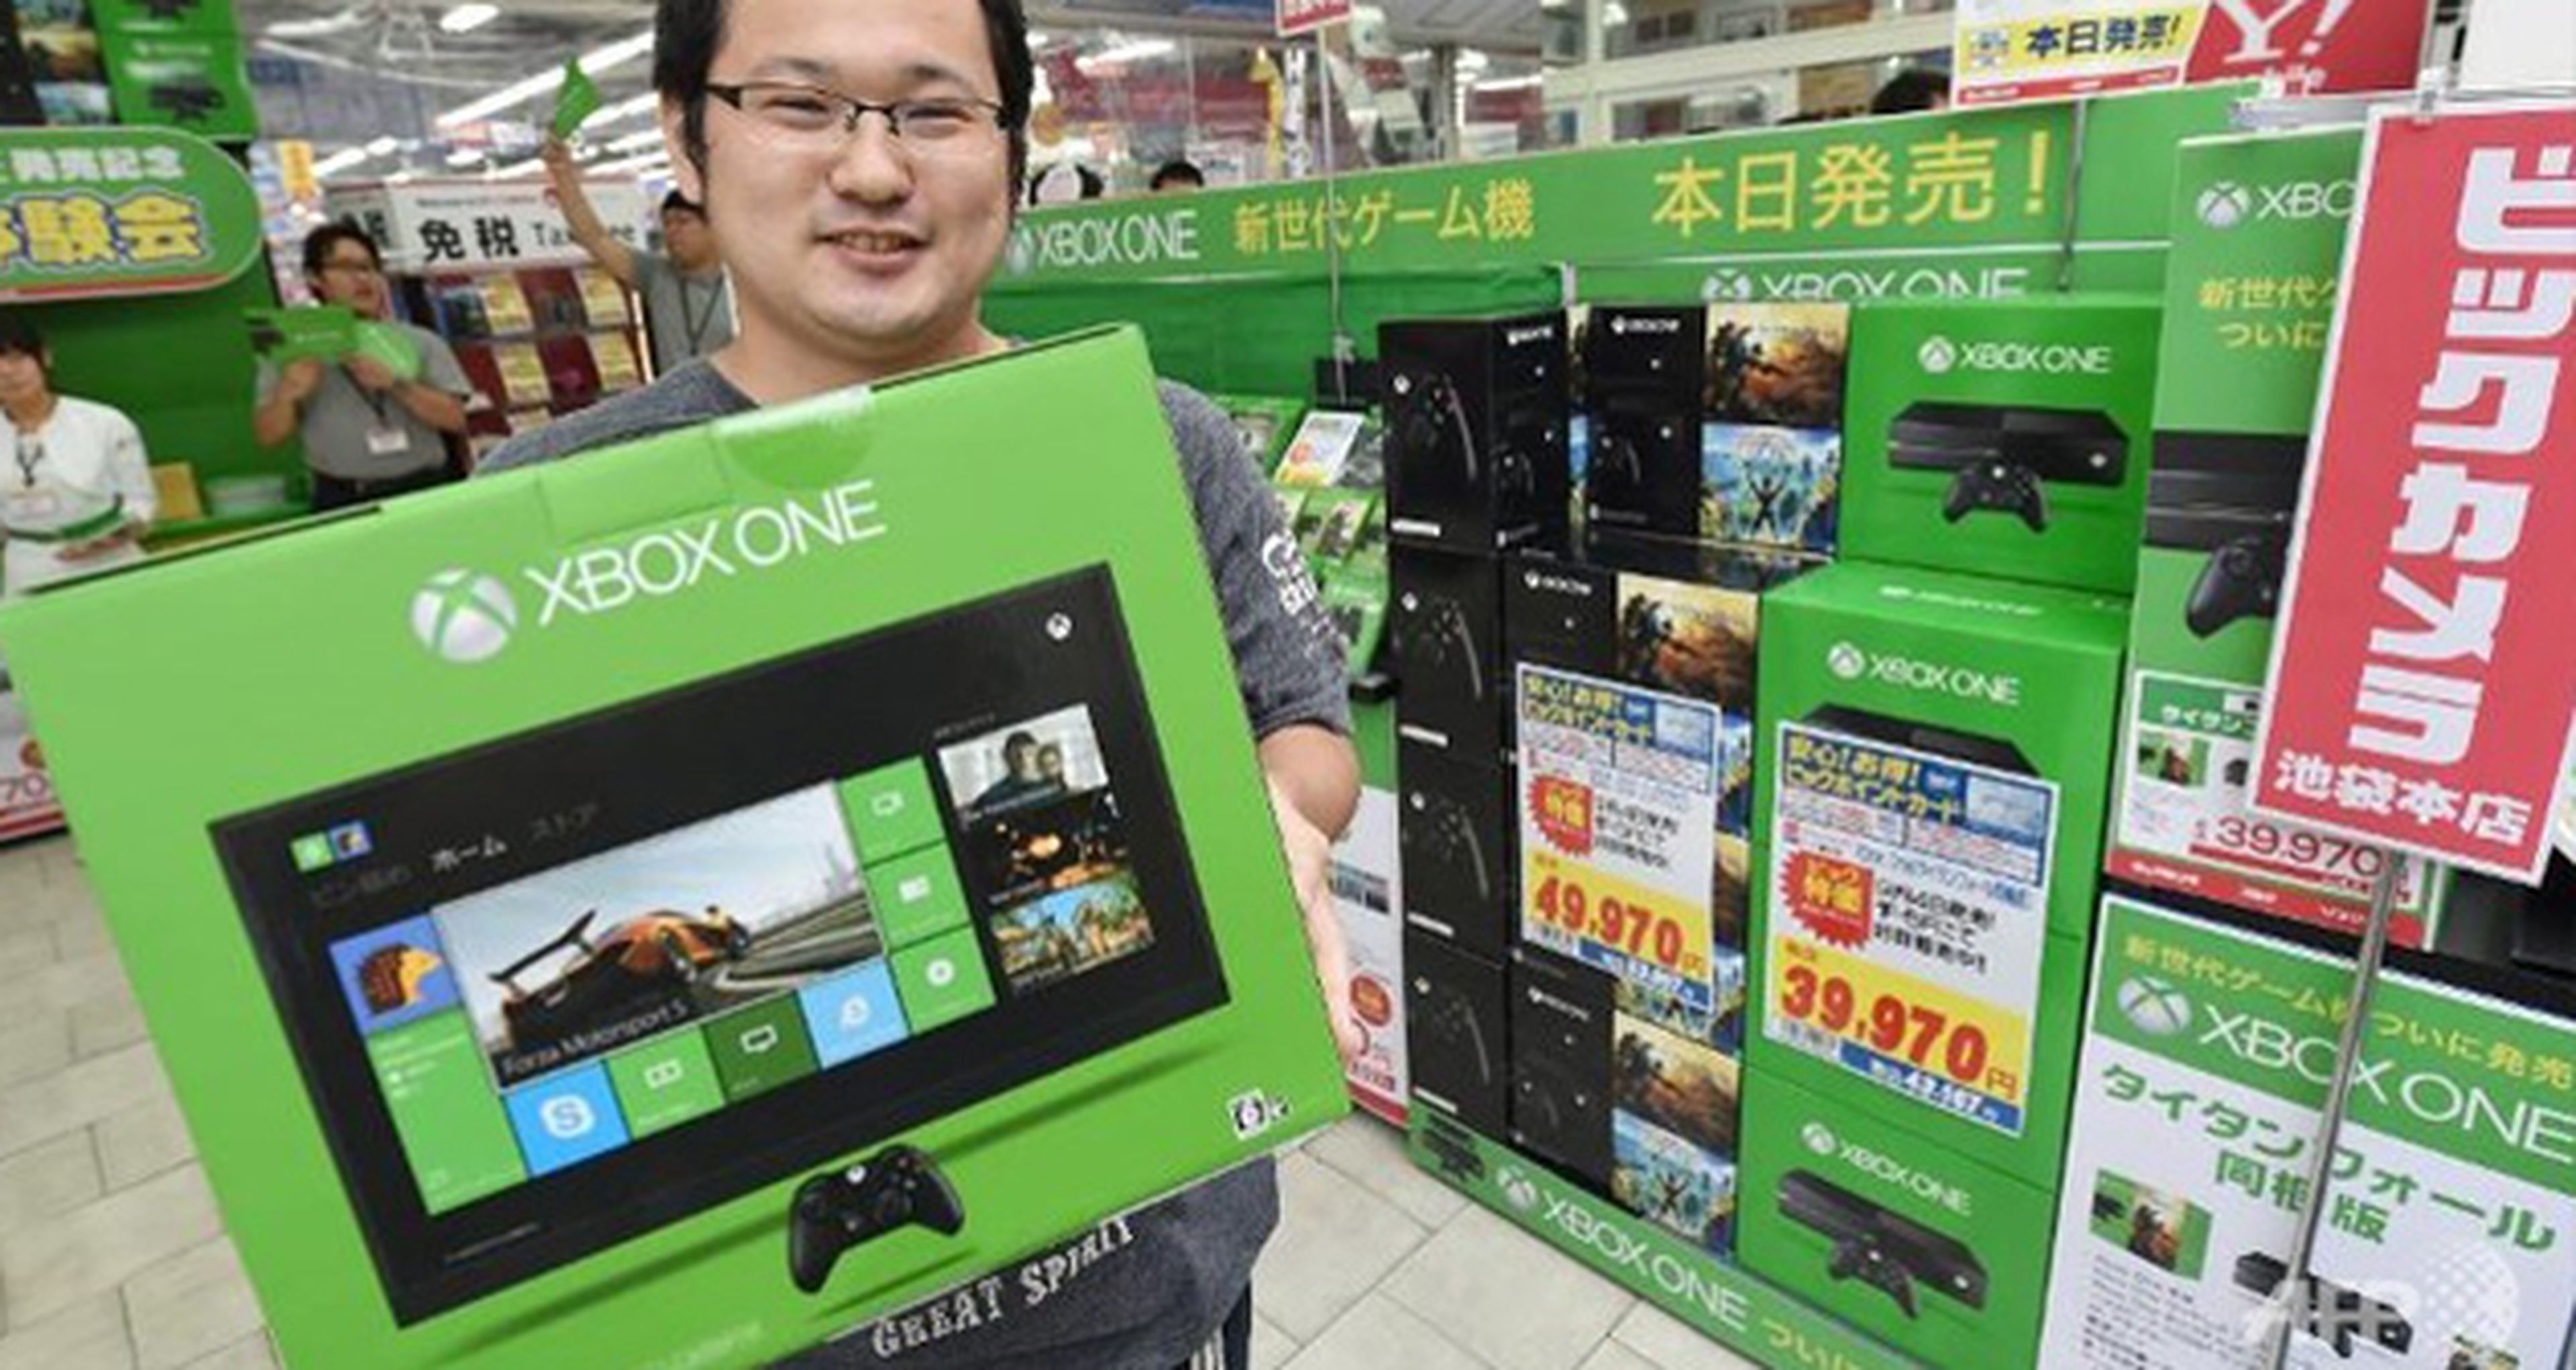 Las bajas ventas de Xbox One en Japón preocupan a Microsoft